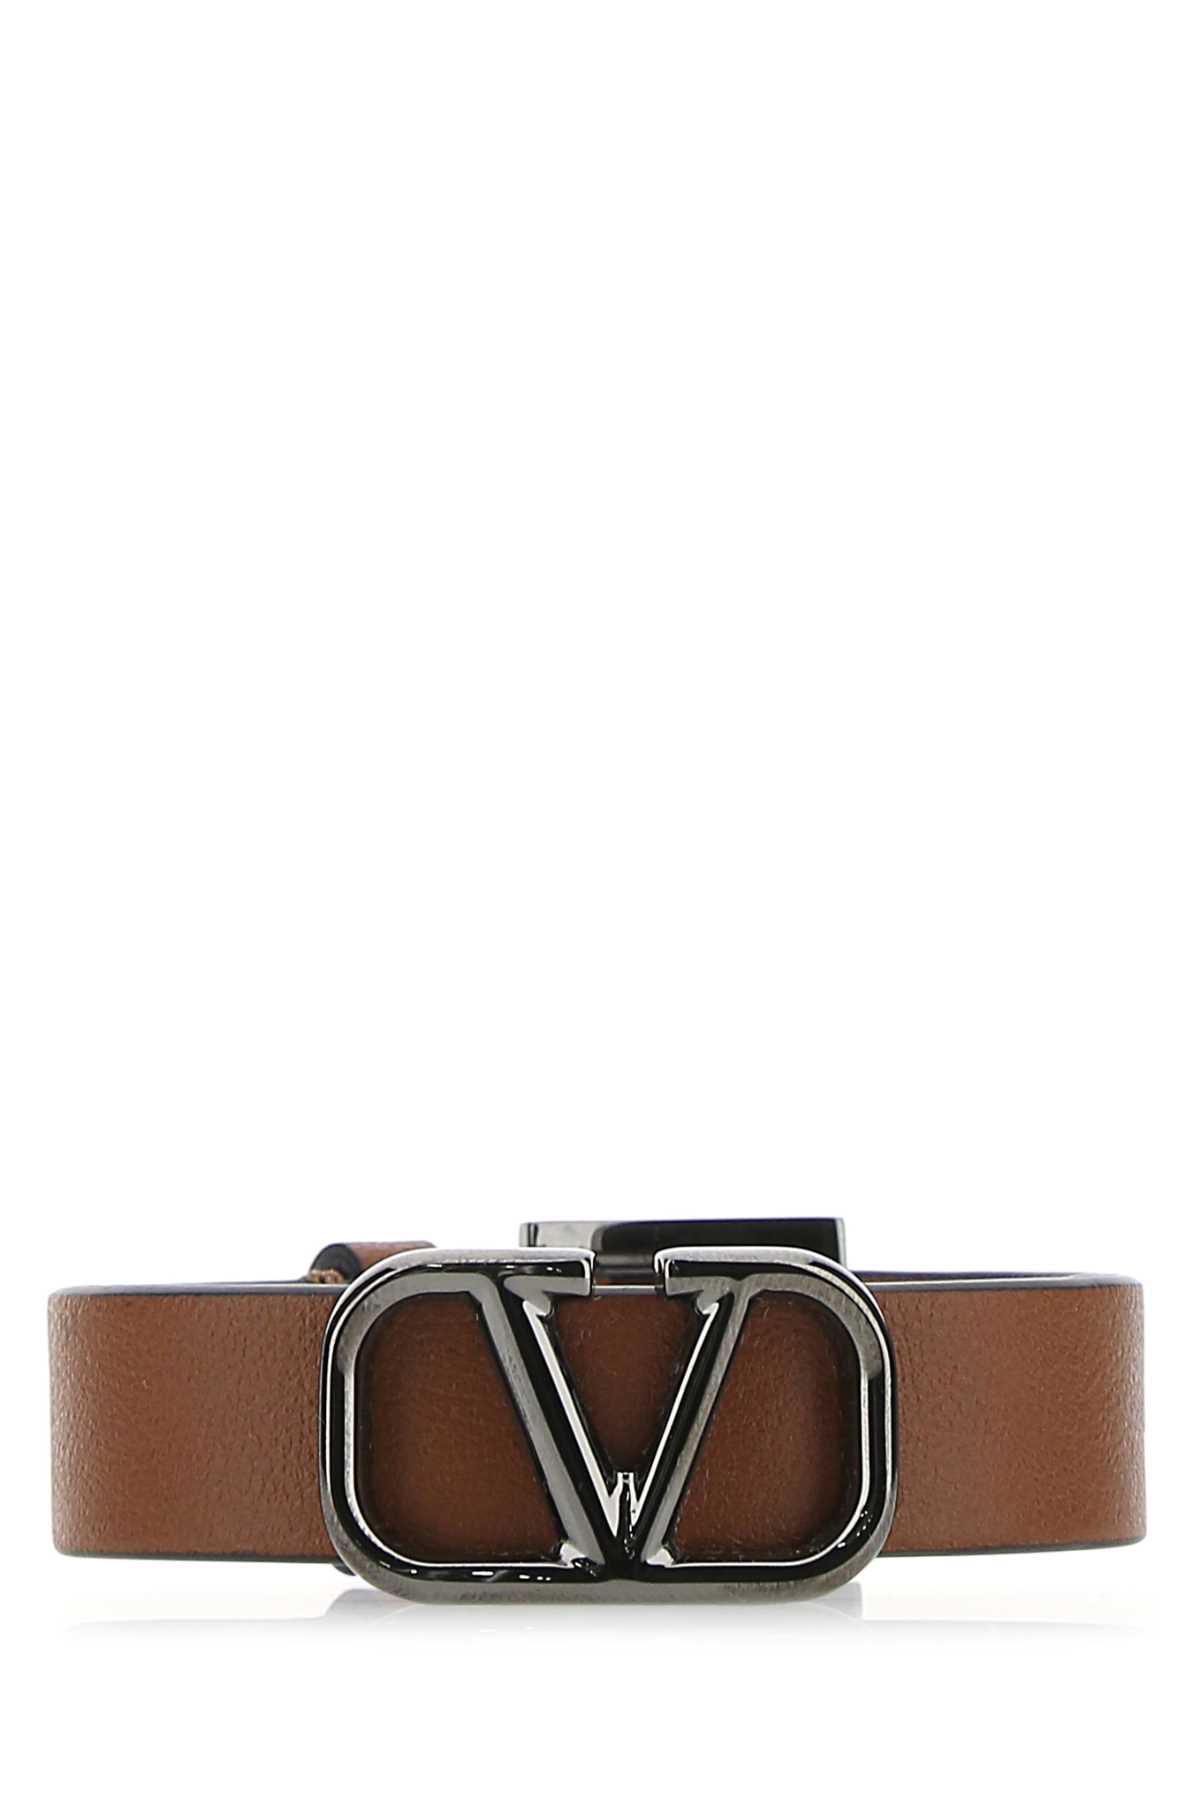 Valentino Garavani Brown Leather Vlogo Bracelet